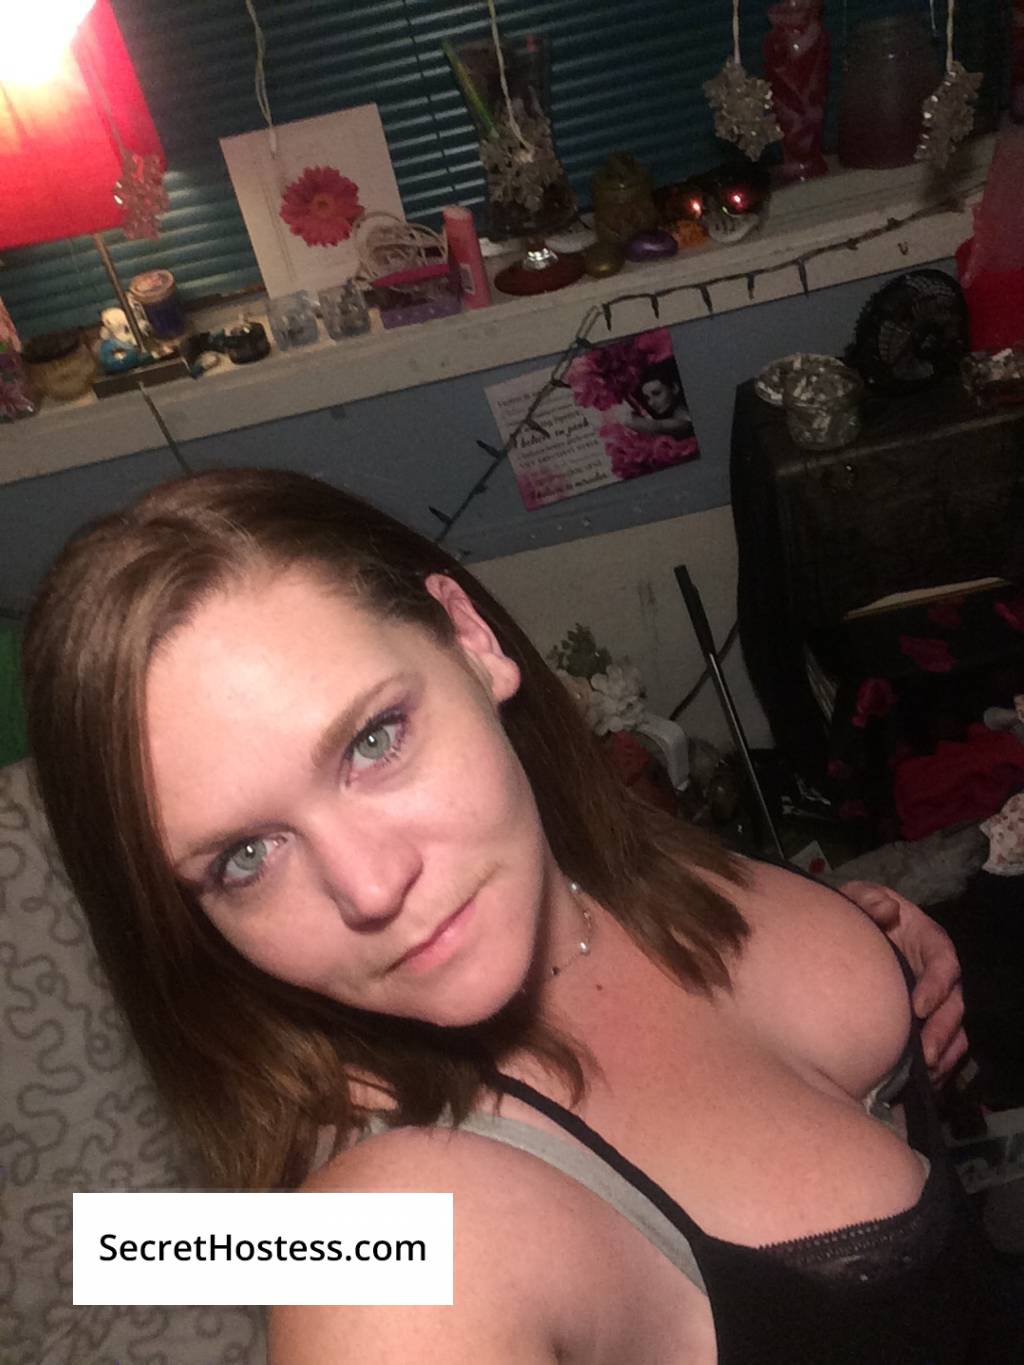 chilliwack girl fucked homemade webcam